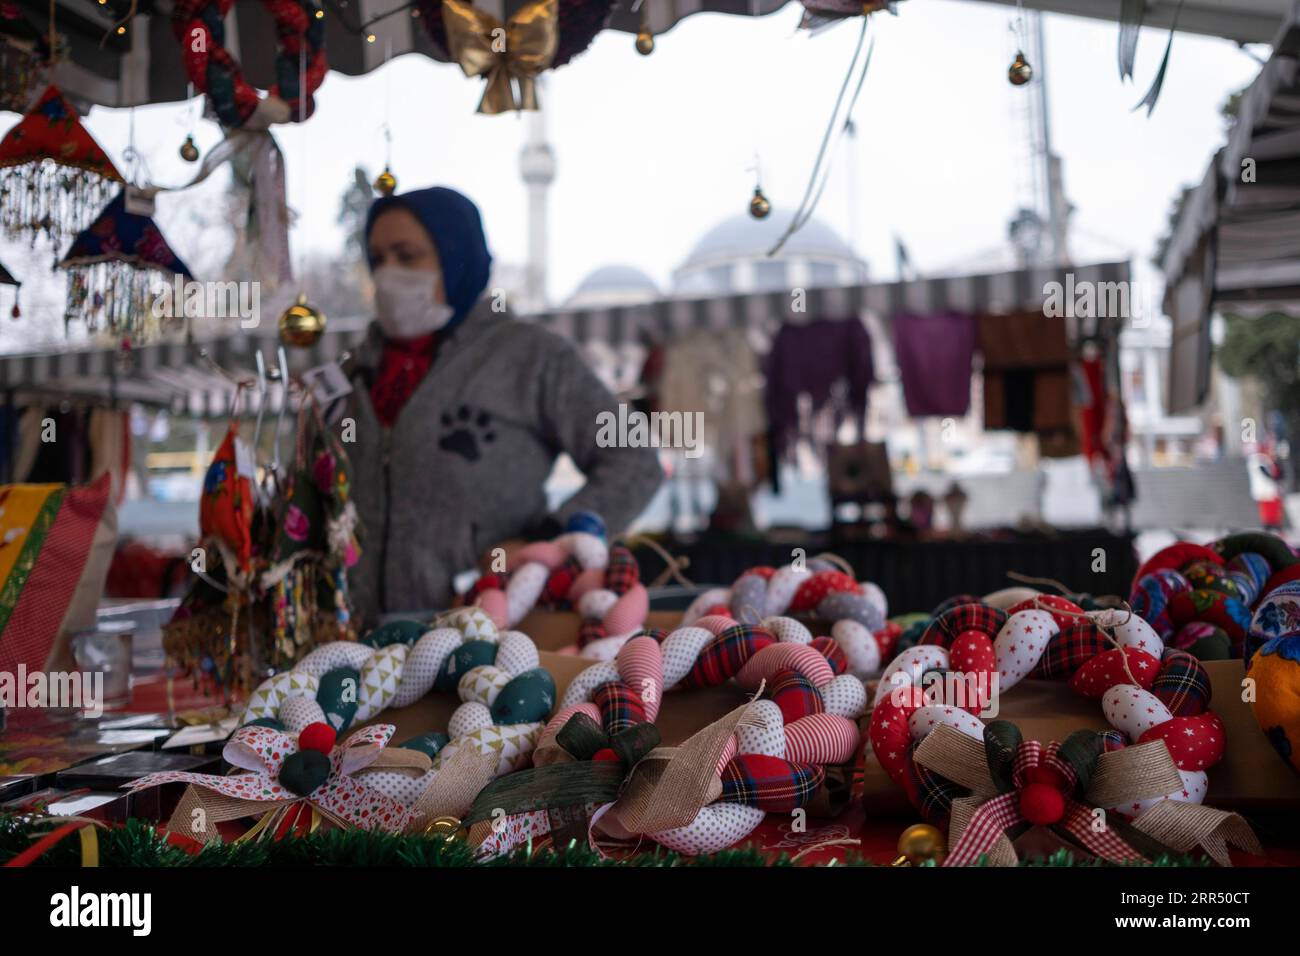 201217 -- ISTANBUL, 17 dicembre 2020 -- Una donna vende oggetti d'artigianato in un bazar a Istanbul, Turchia, il 17 dicembre 2020. Il bazar presso un molo nel quartiere Besiktas di Istanbul è pieno di saponi fatti a mano, giocattoli, pezzi a maglia, oggetti in porcellana e gioielli, tutti prodotti a casa da donne locali. Nell'ambito di un progetto avviato per sostenere l'imprenditorialità femminile, circa 500 donne hanno recentemente iniziato a vendere i loro prodotti al bazar che è stato dato il via lunedì. Foto di /Xinhua TO GO WITH Feature: Il programma imprenditoriale aiuta le donne turche a vendere prodotti fatti in casa TURCHIA-ISTANBUL-WOMEN ENTREPRENEURSHIP OsmanxOr Foto Stock